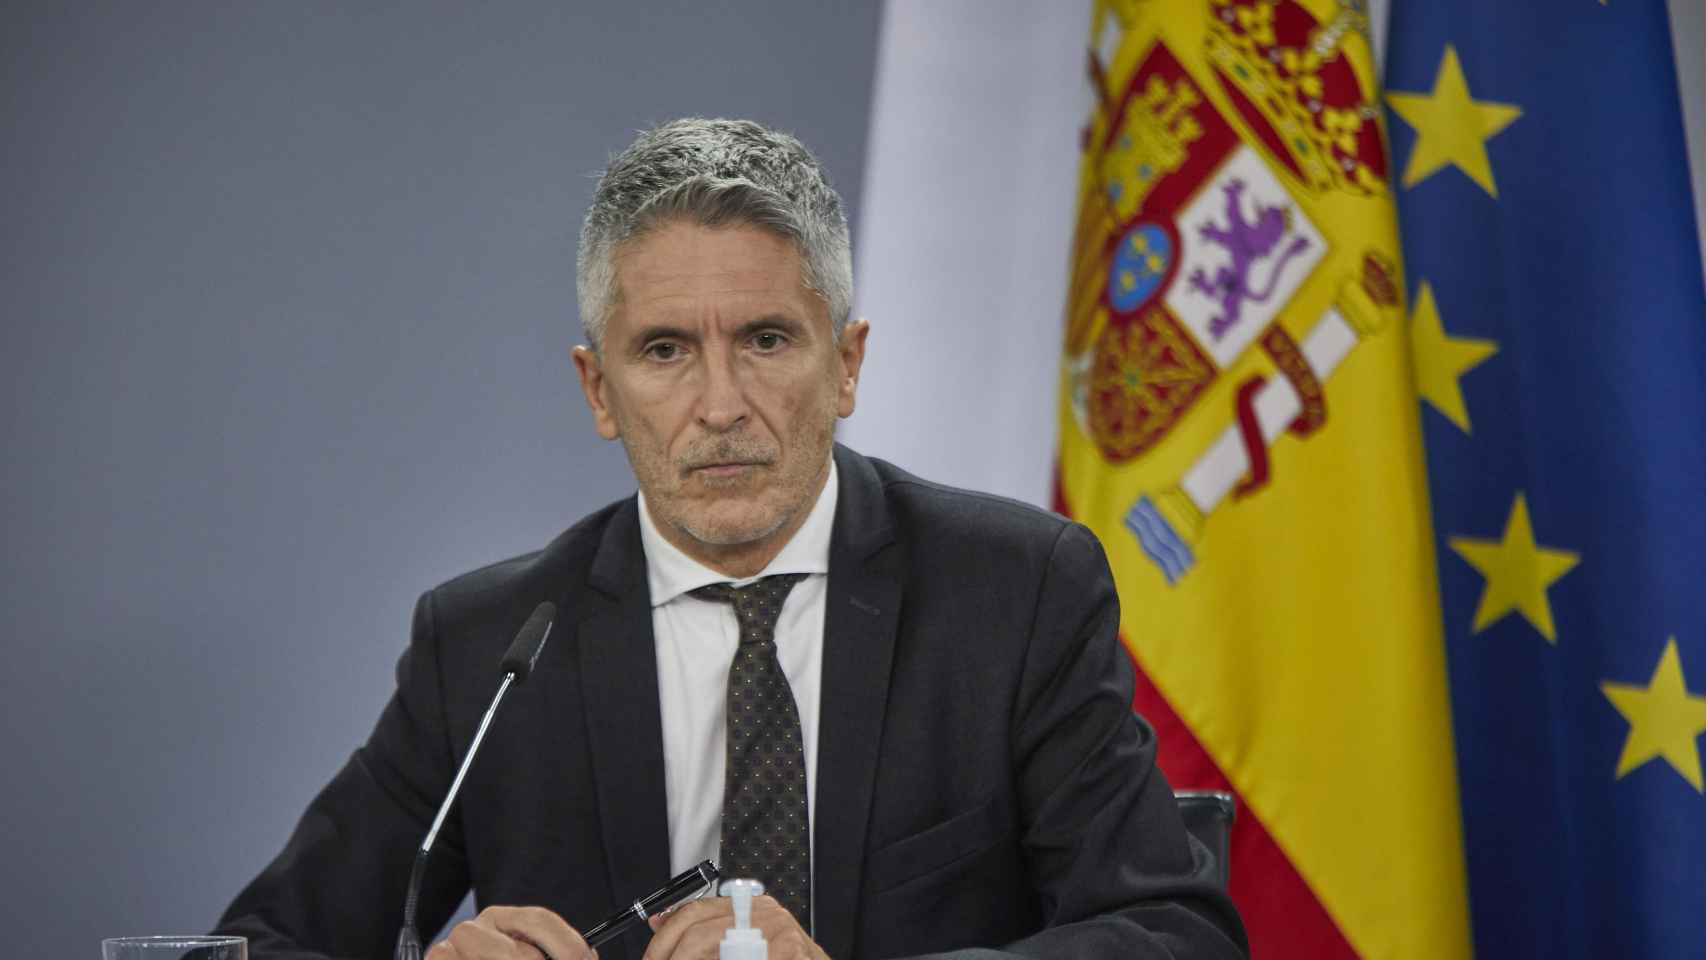 El ministro de Interior, Fernando Grande Marlaska, anunciando las nuevas normas de tráfico / EUROPA PRESS